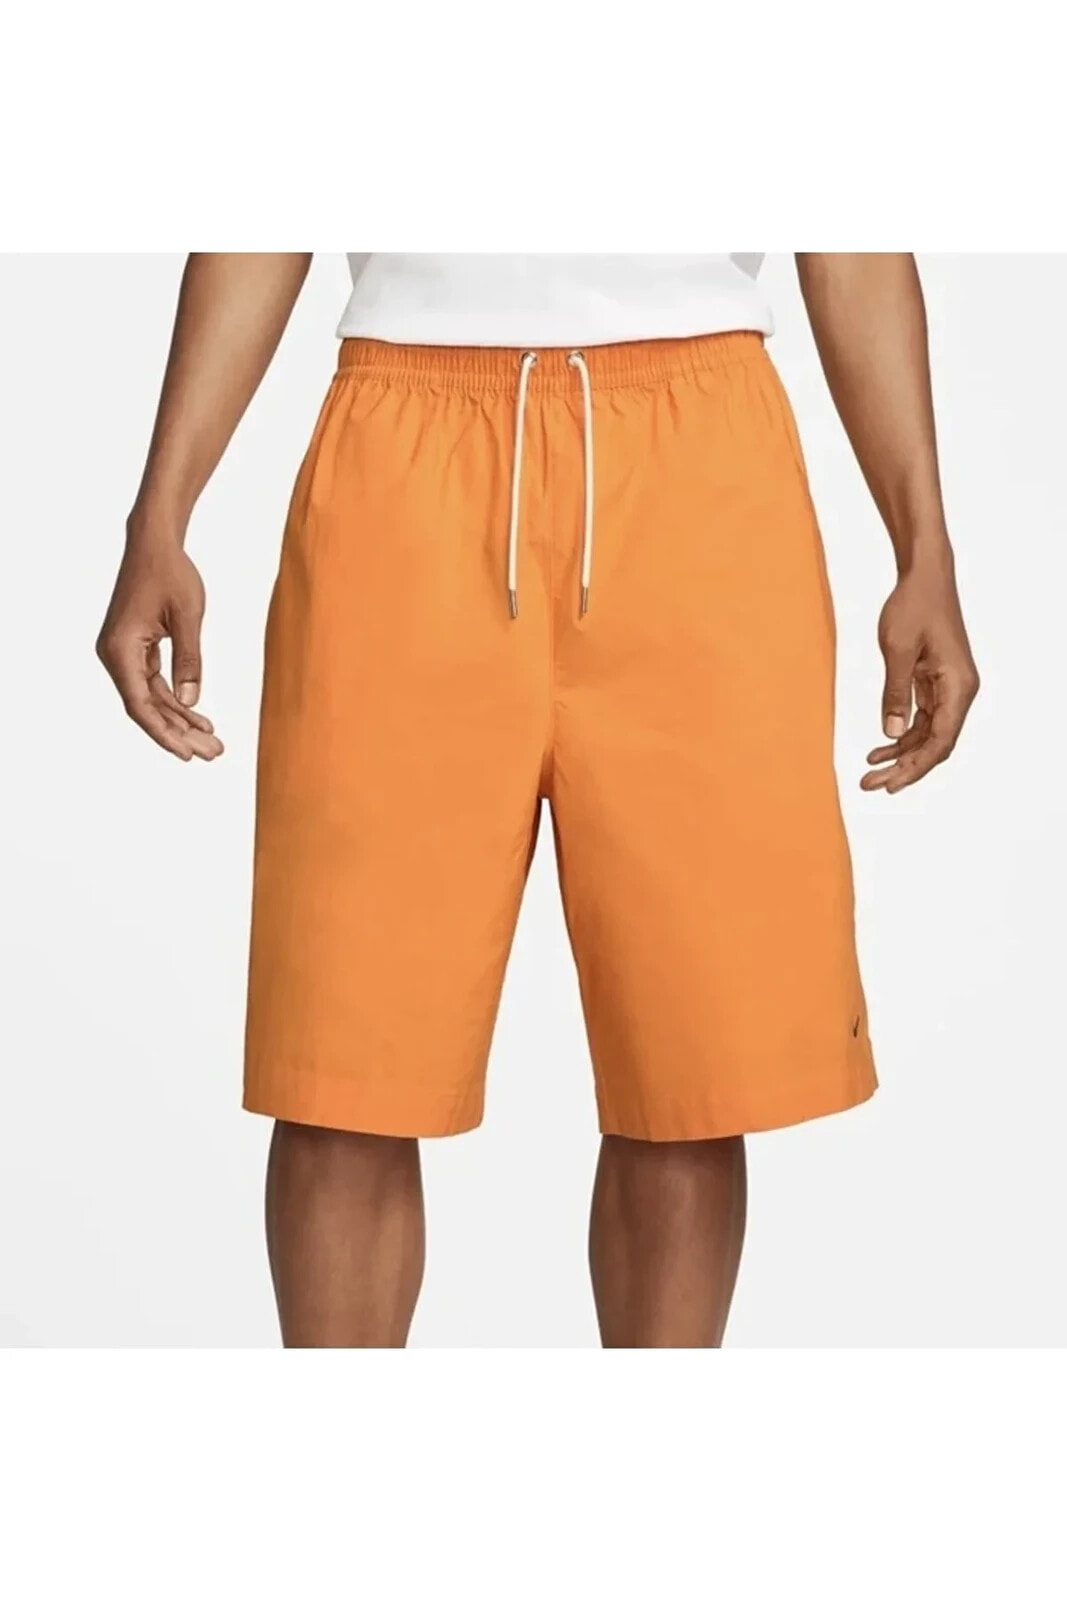 Sportswear Style Essentials Men's Oversized Shorts - Orange